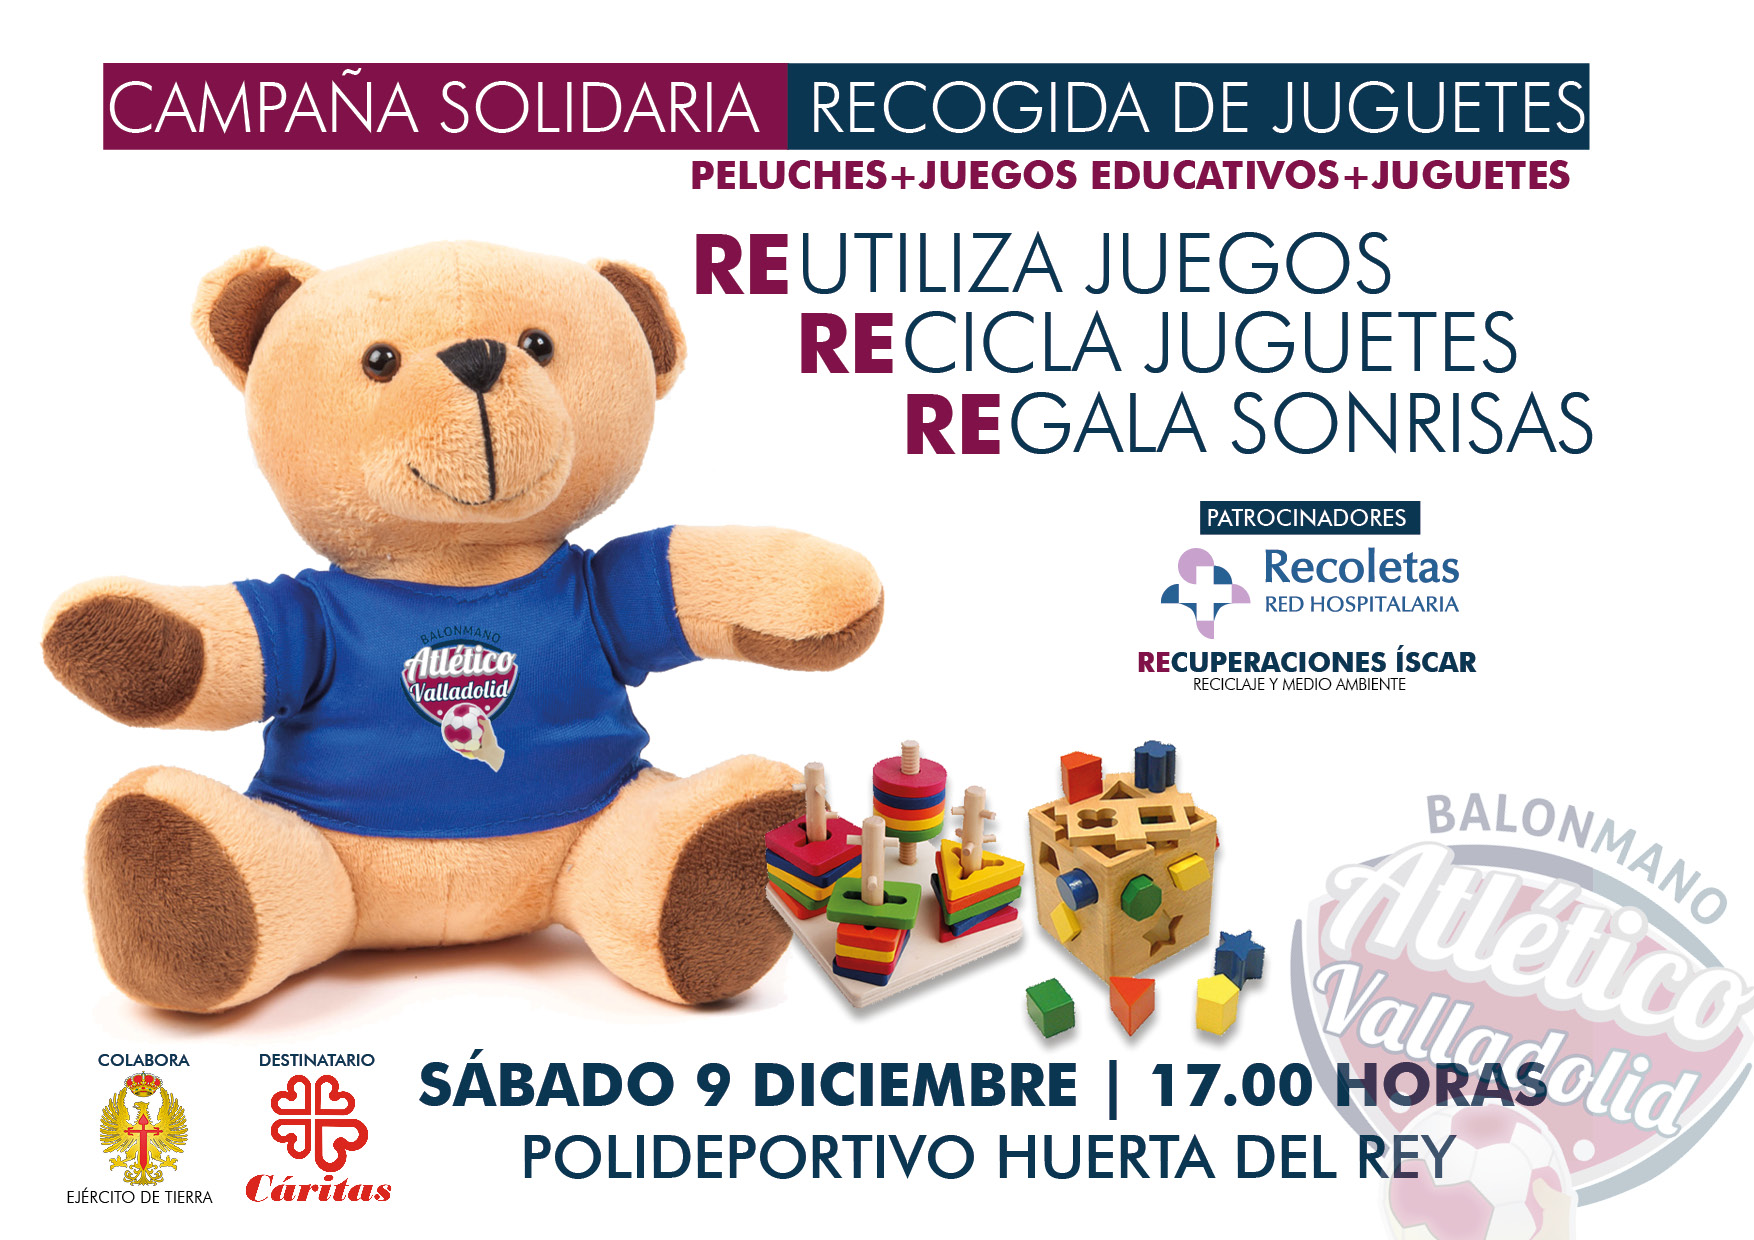 La campaña solidaria de recogida de juguetes del Recoletas Atlético Valladolid, el próximo 9 de diciembre ante Puente Genil